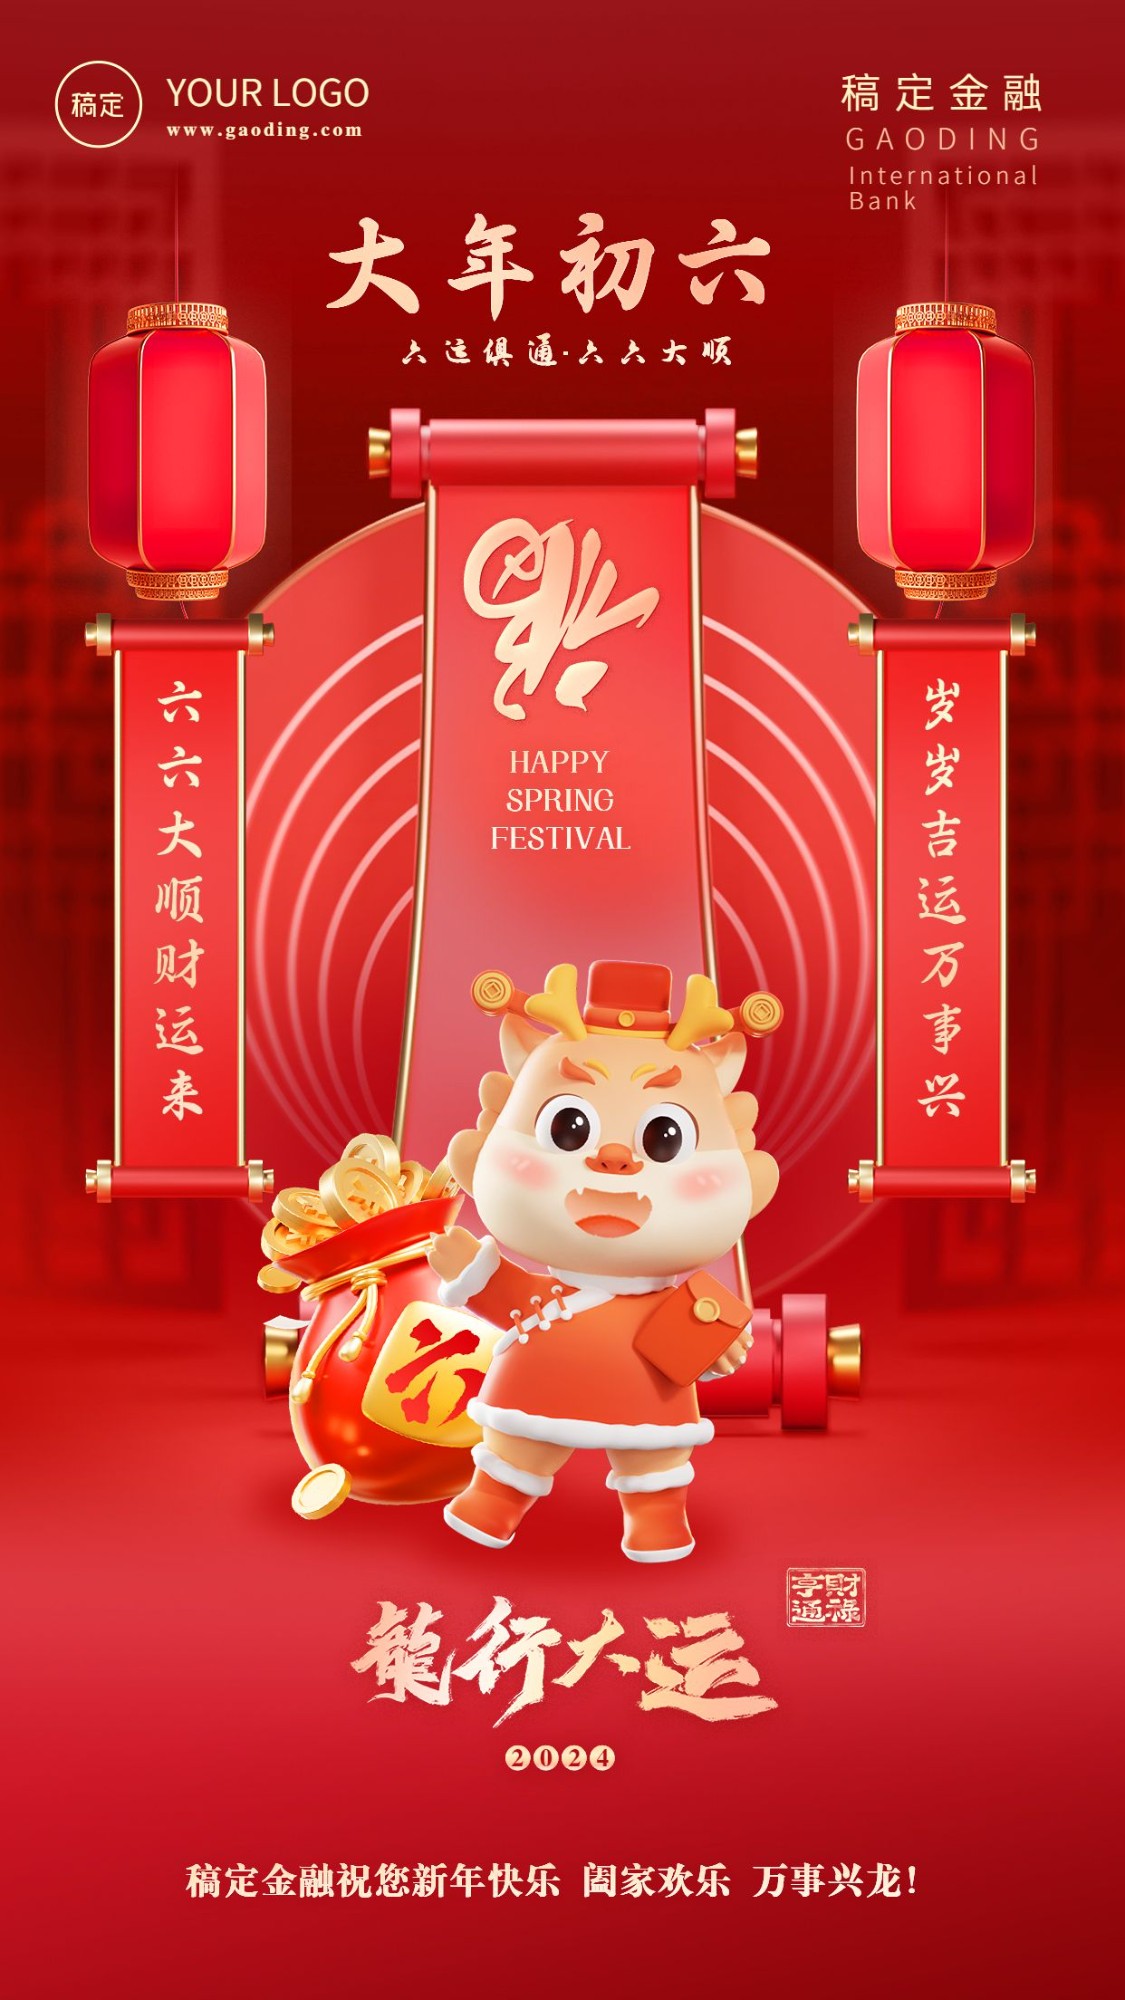 春节龙年正月初六金融保险节日祝福喜庆3D系列手机海报套系预览效果